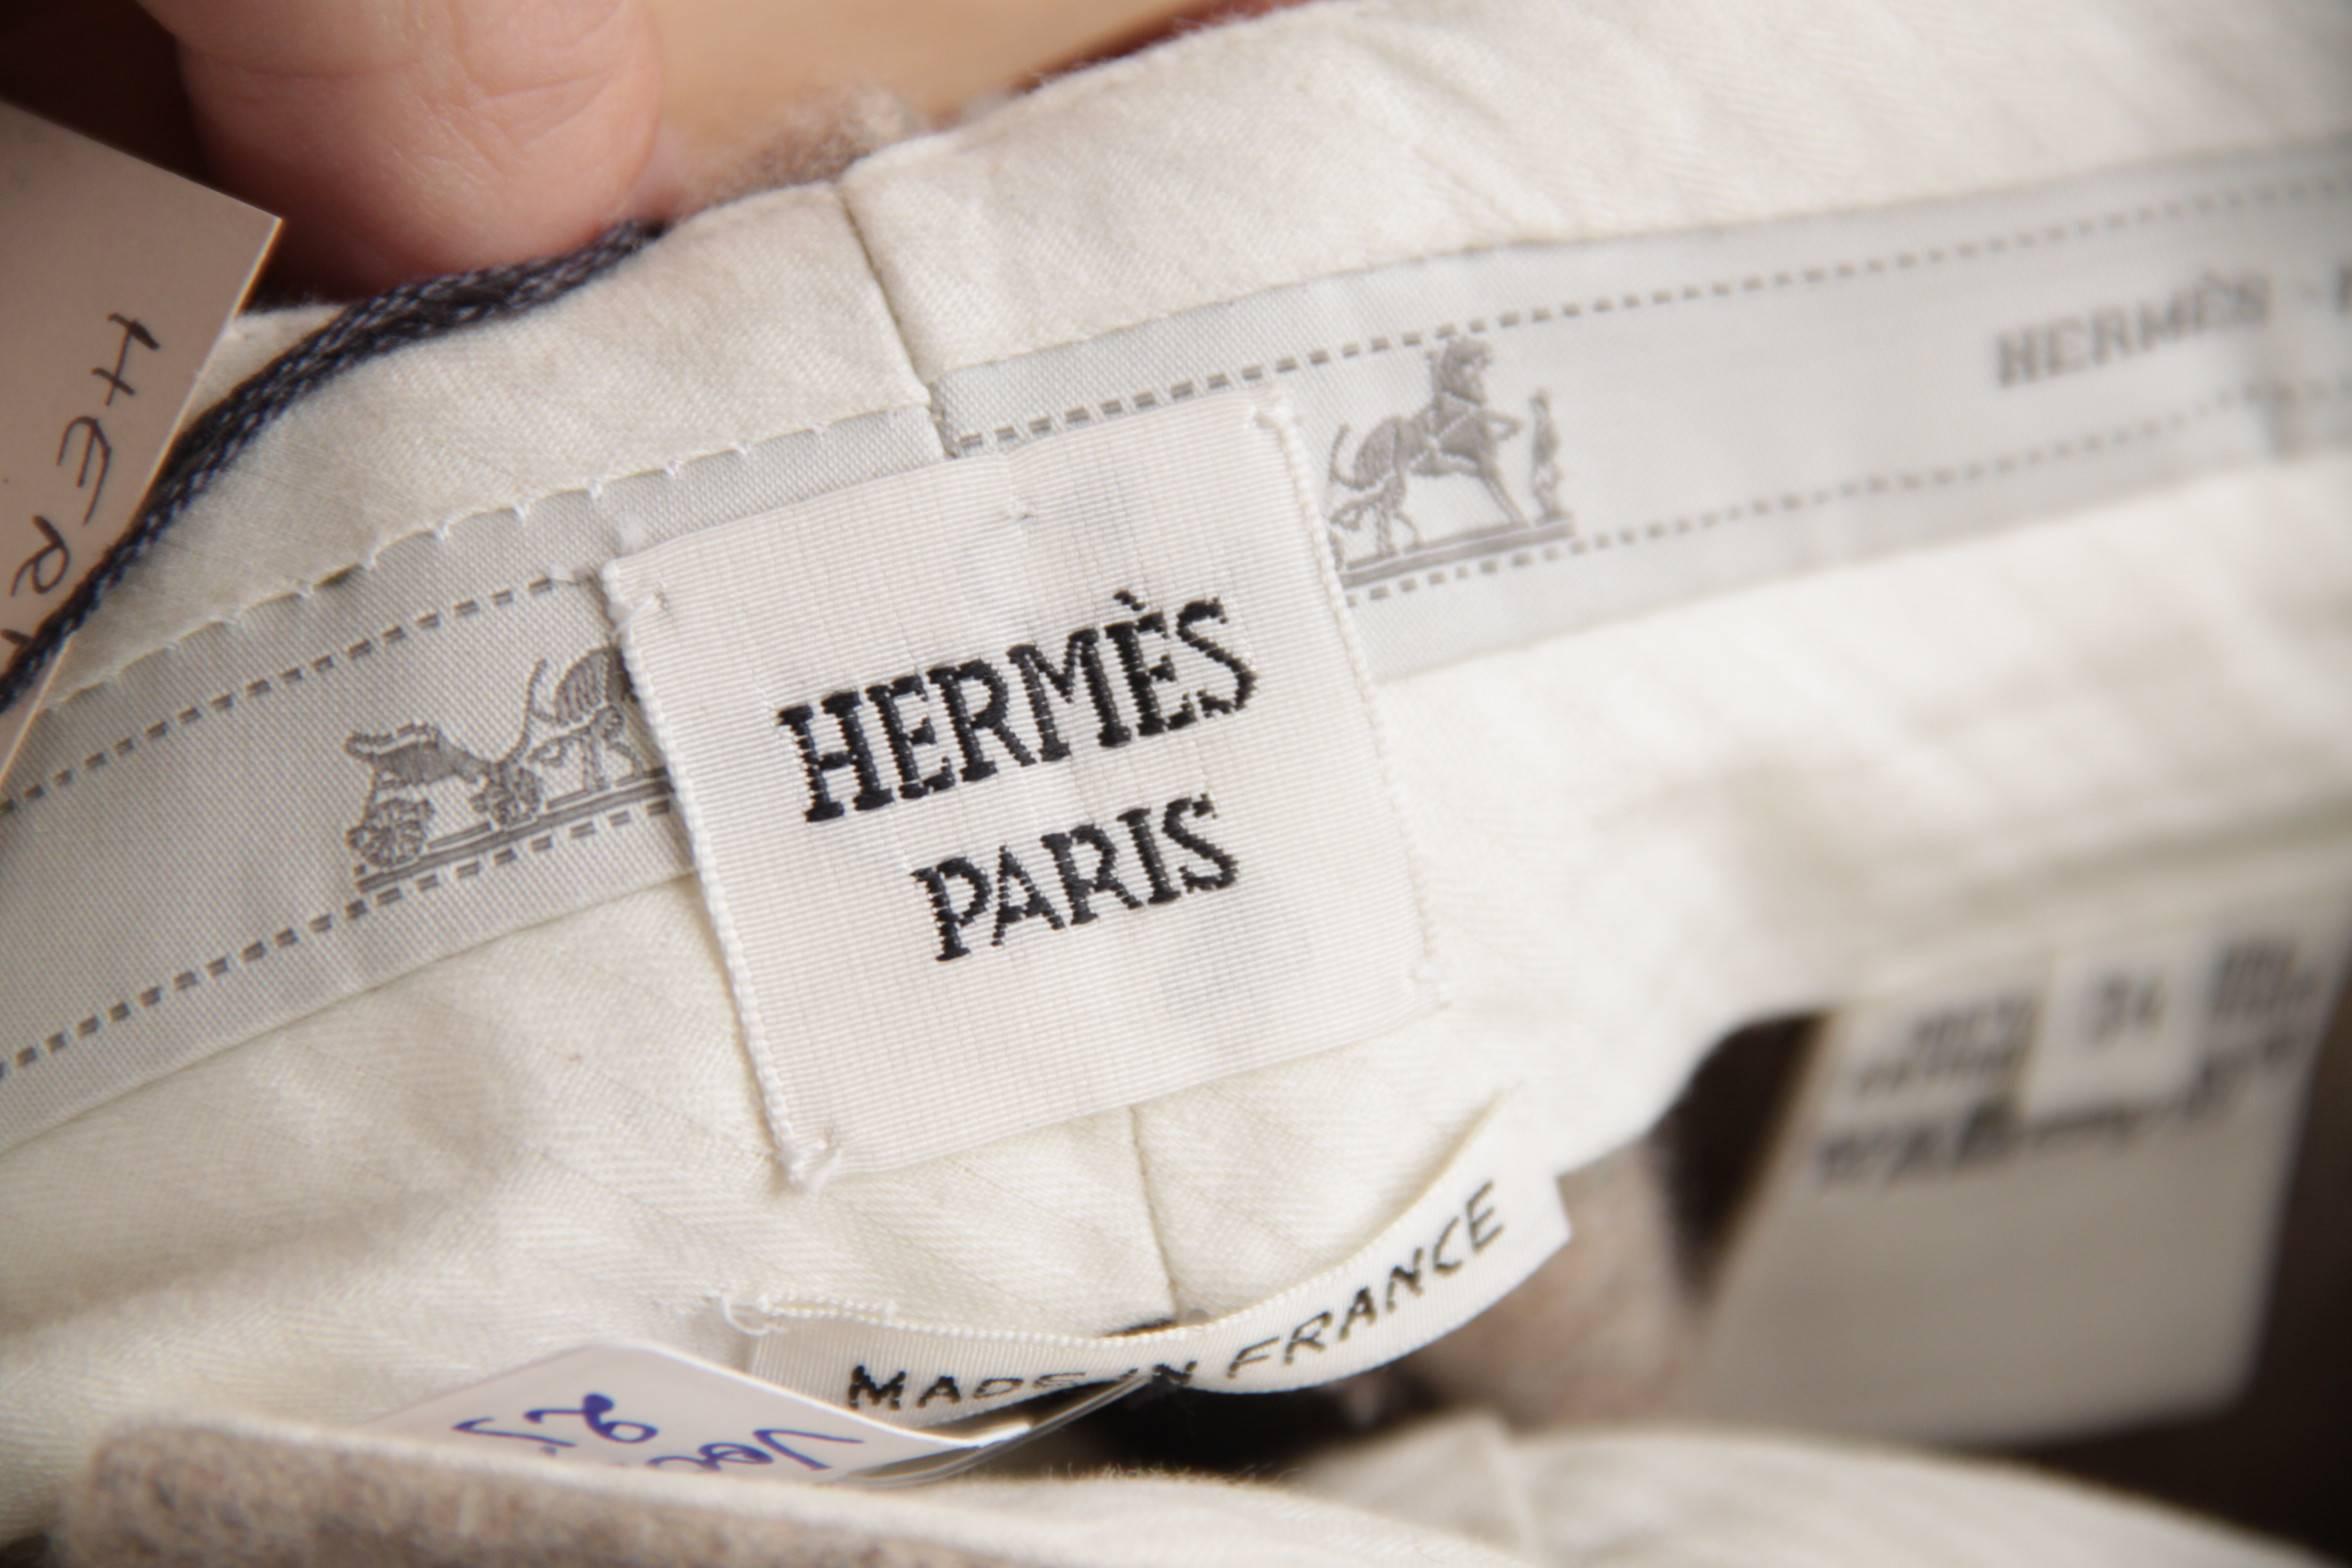 HERMES PARIS Vintage Beige Cashmere TAILORED TROUSERS Pants Size 34 XS 2